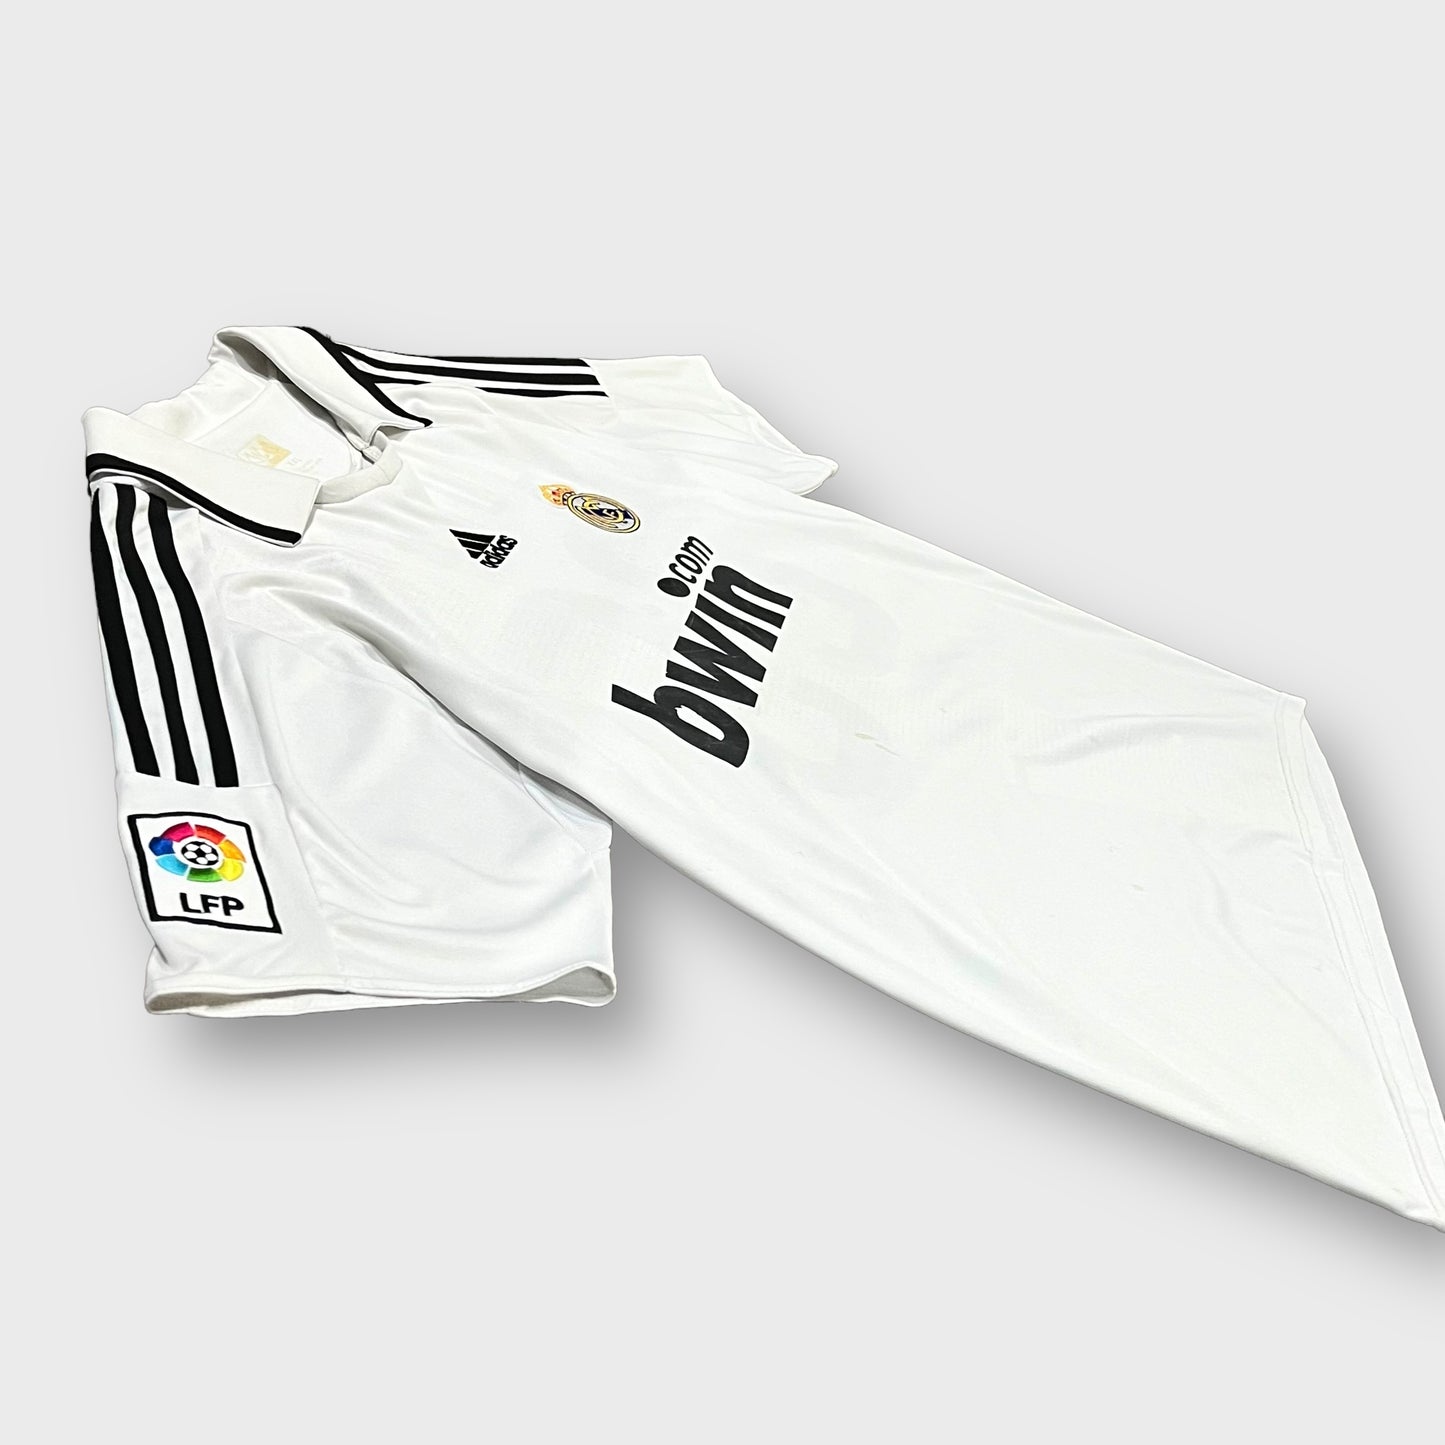 00’s adidas “real madrid”       soccer shirt